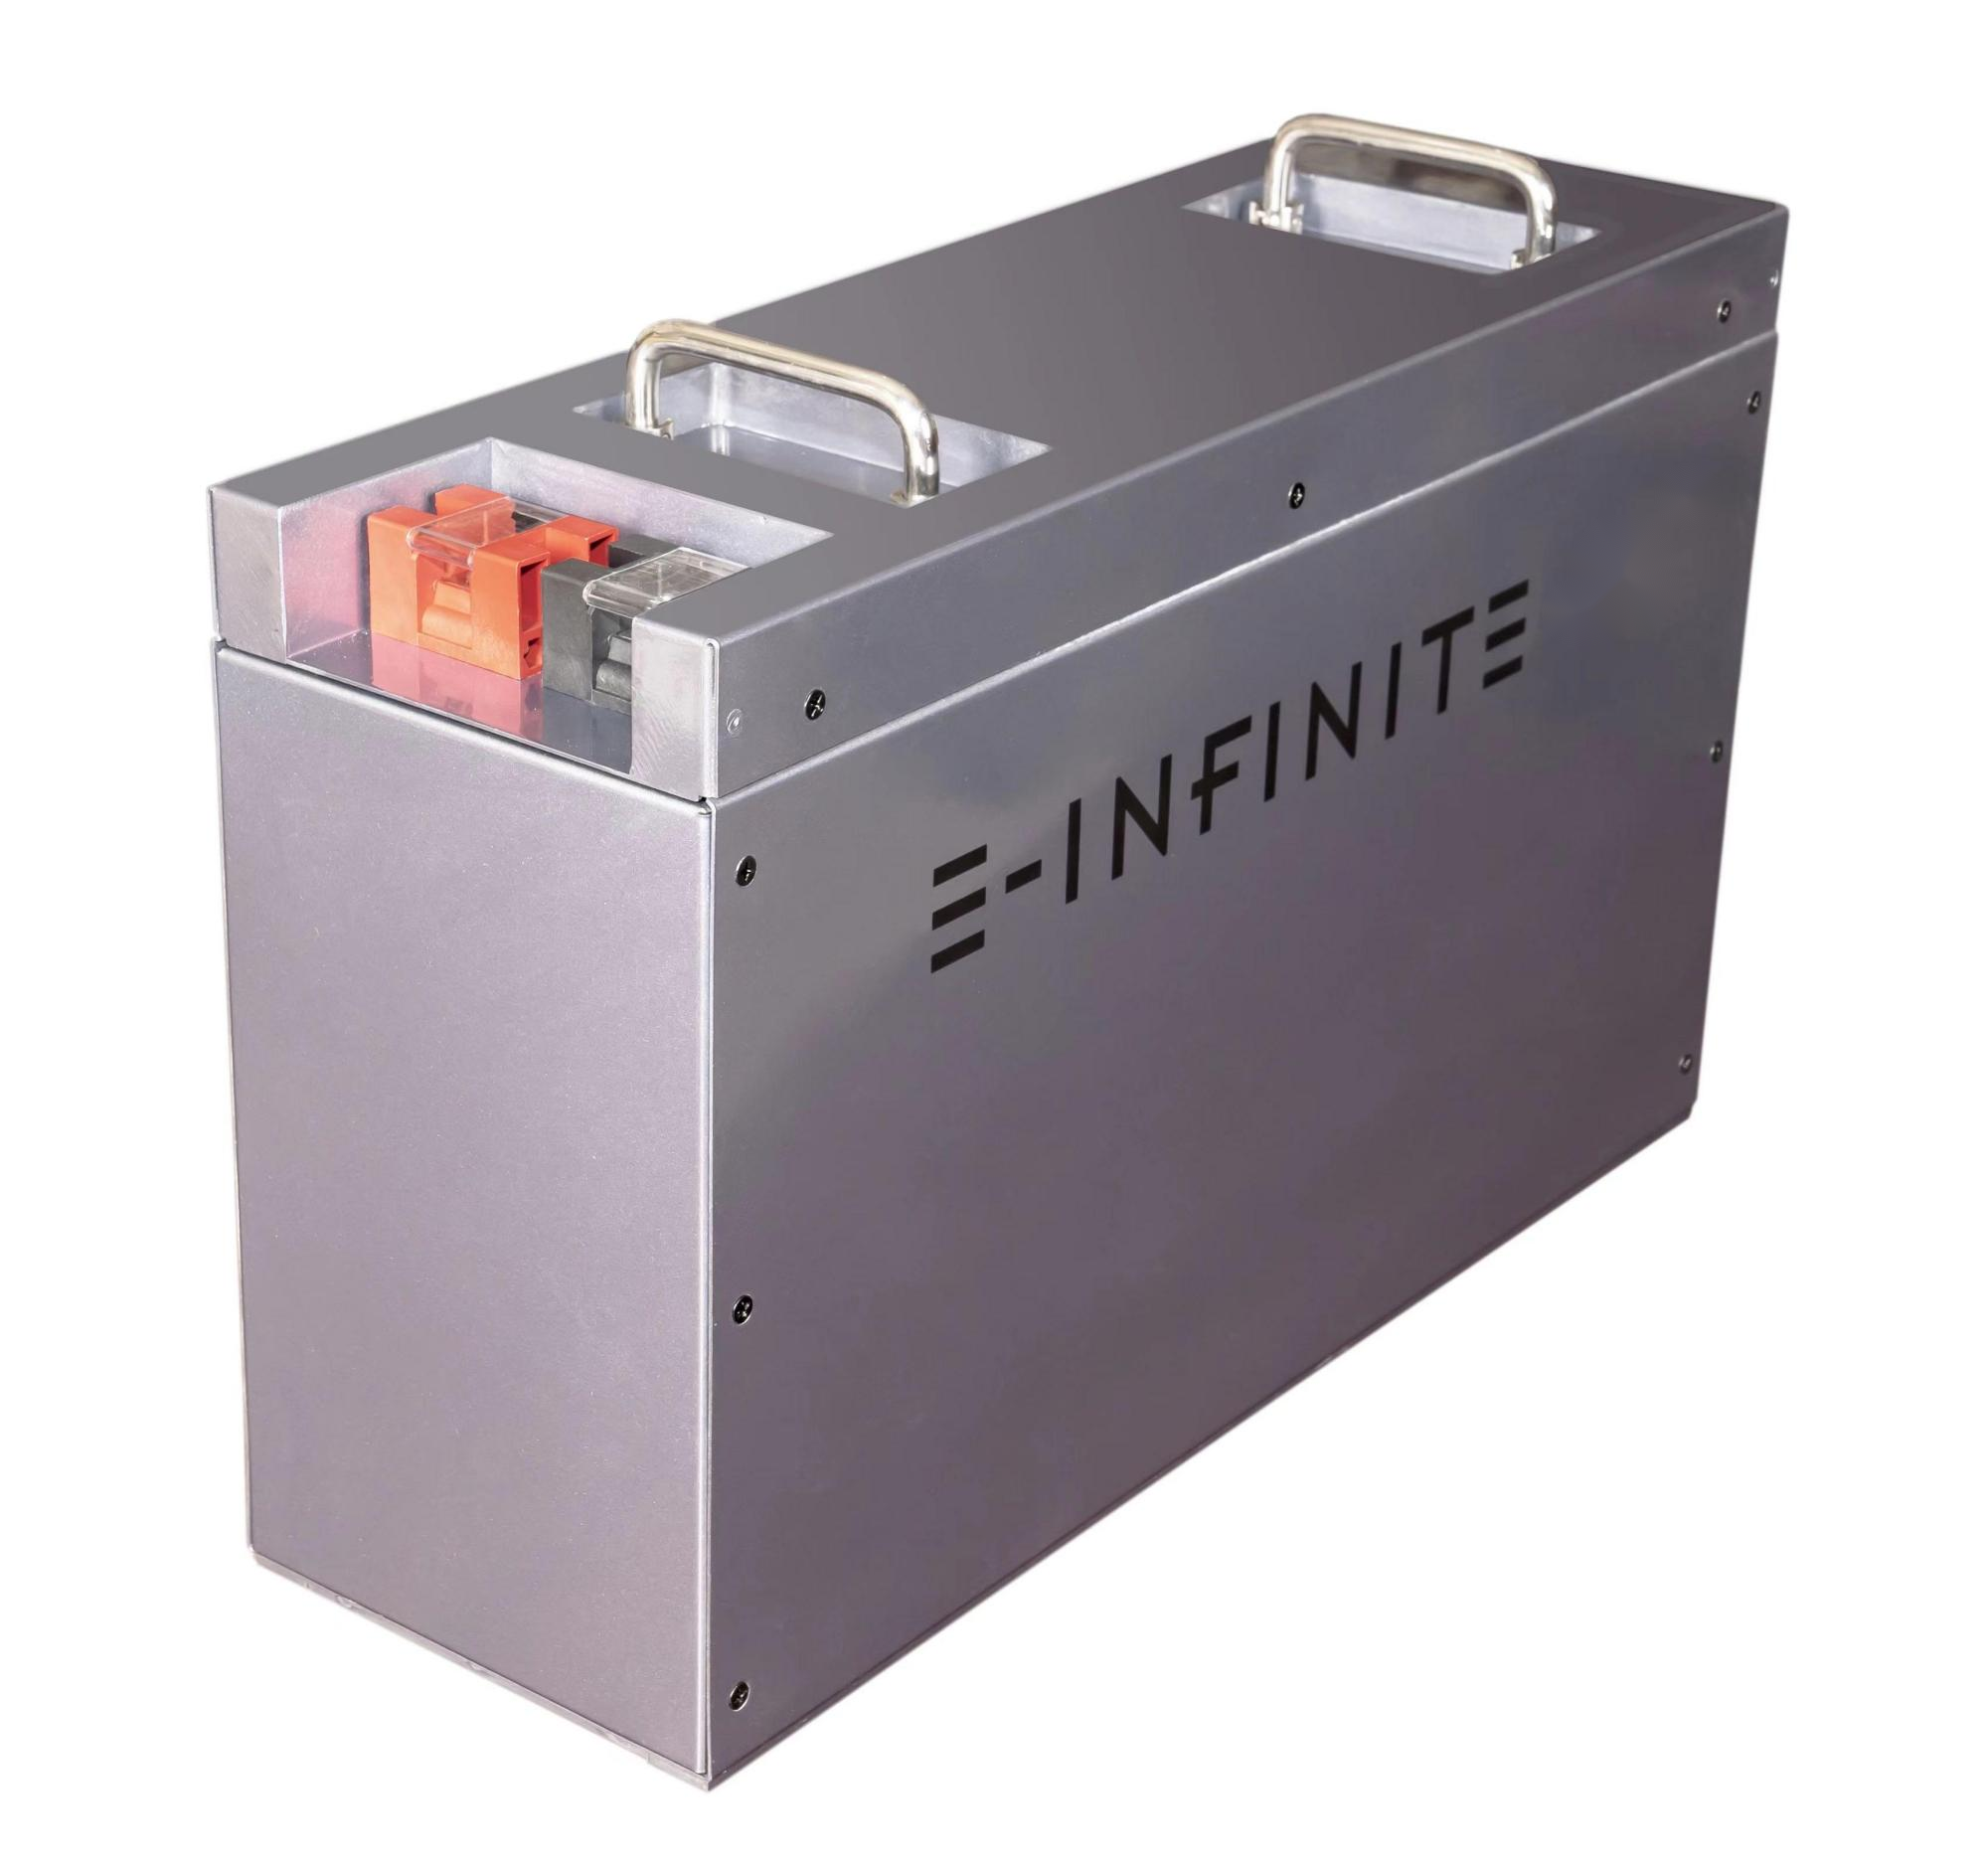 E-infinite , RV 12.8V 200Ah LiFePO4 Battery, Built-in 200A BMS